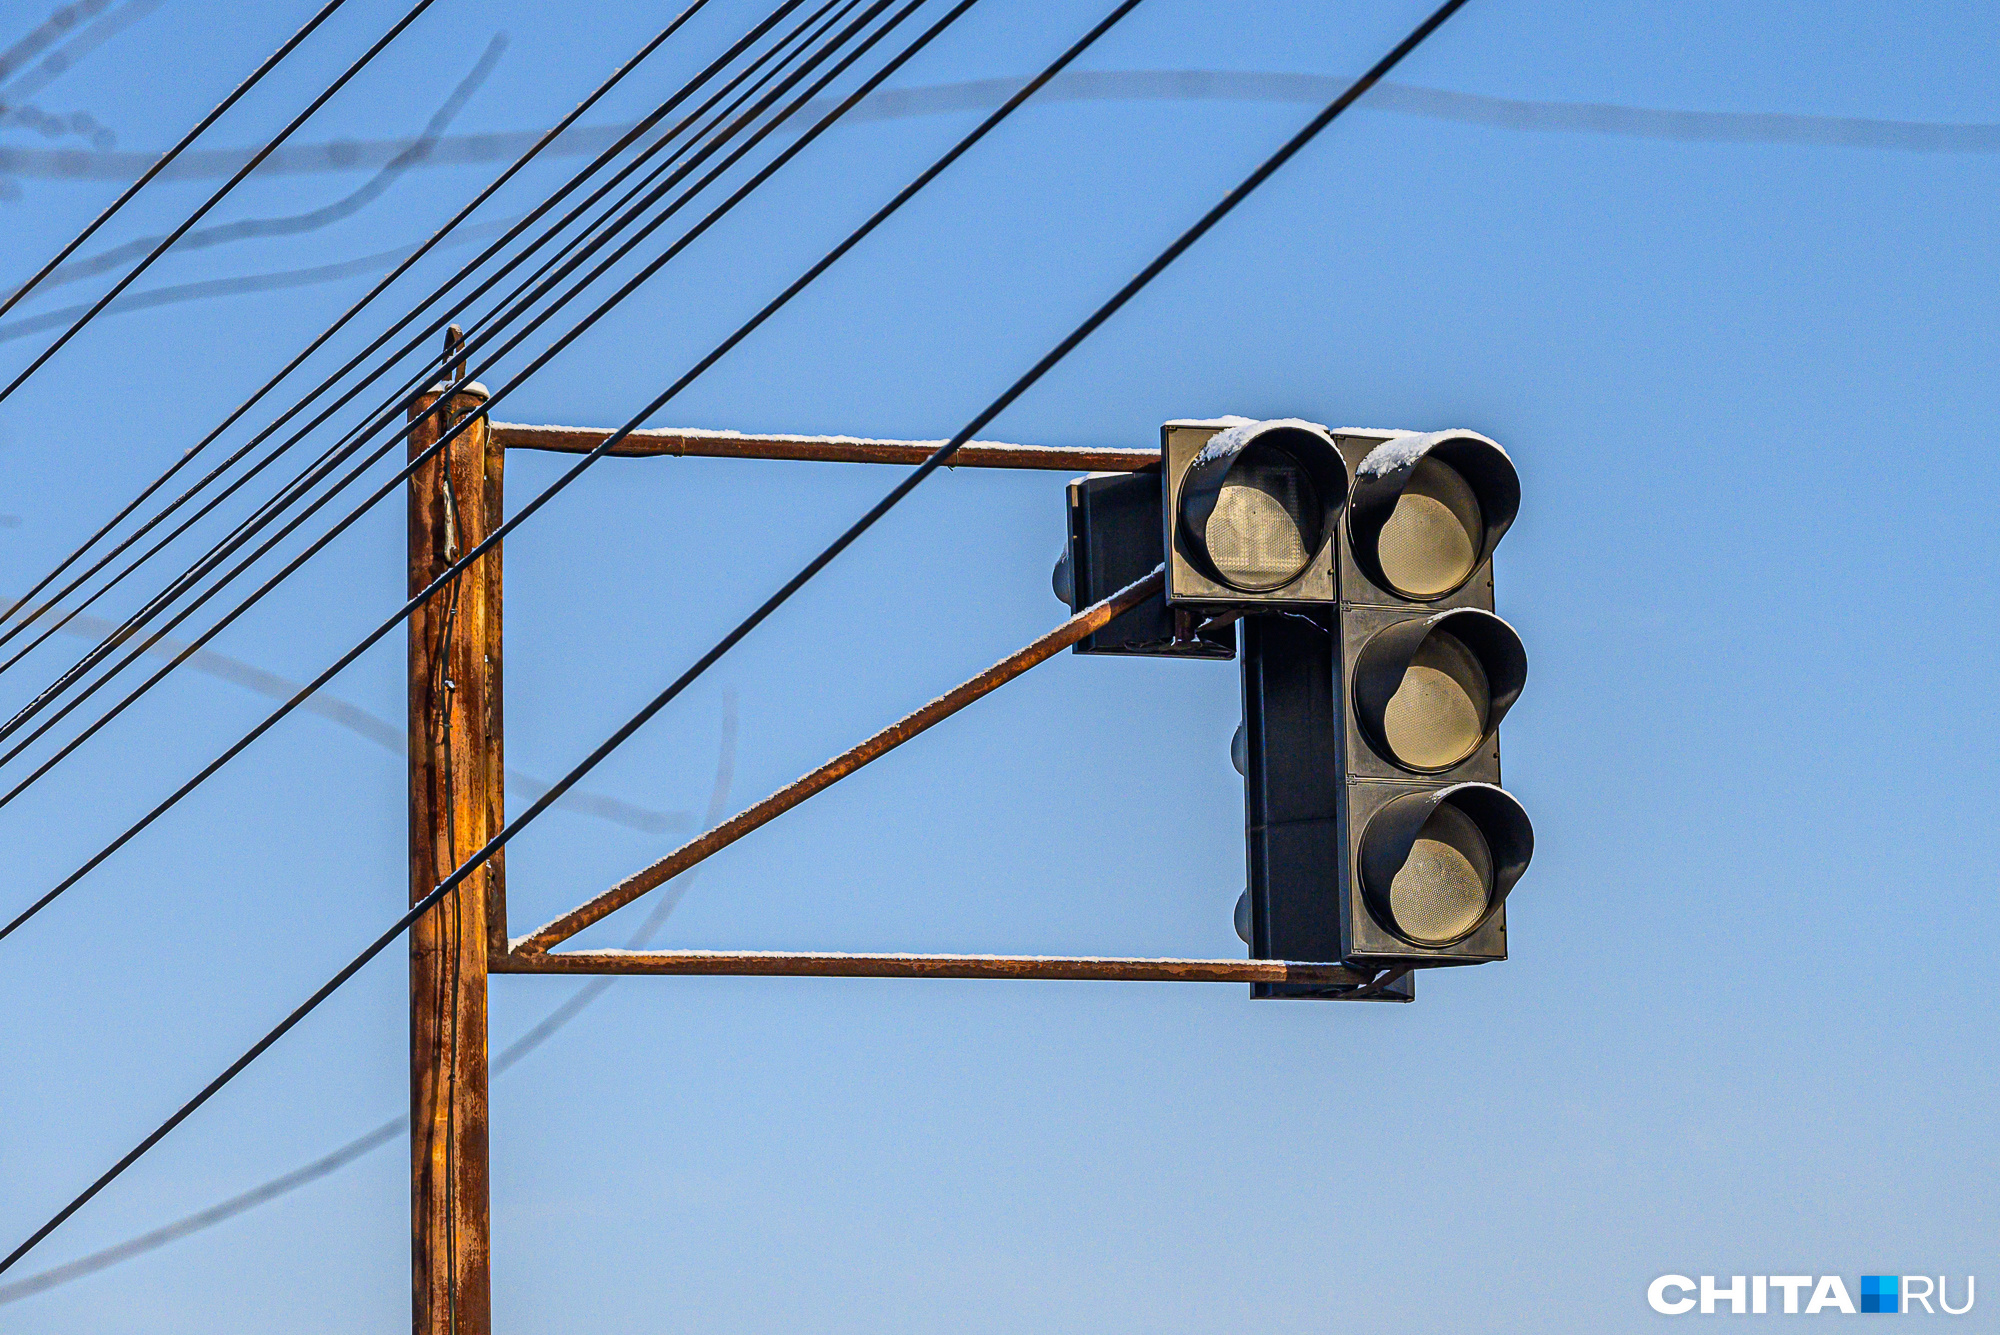 Светофоры почти два дня не будут работать на перекрестках в центре Читы